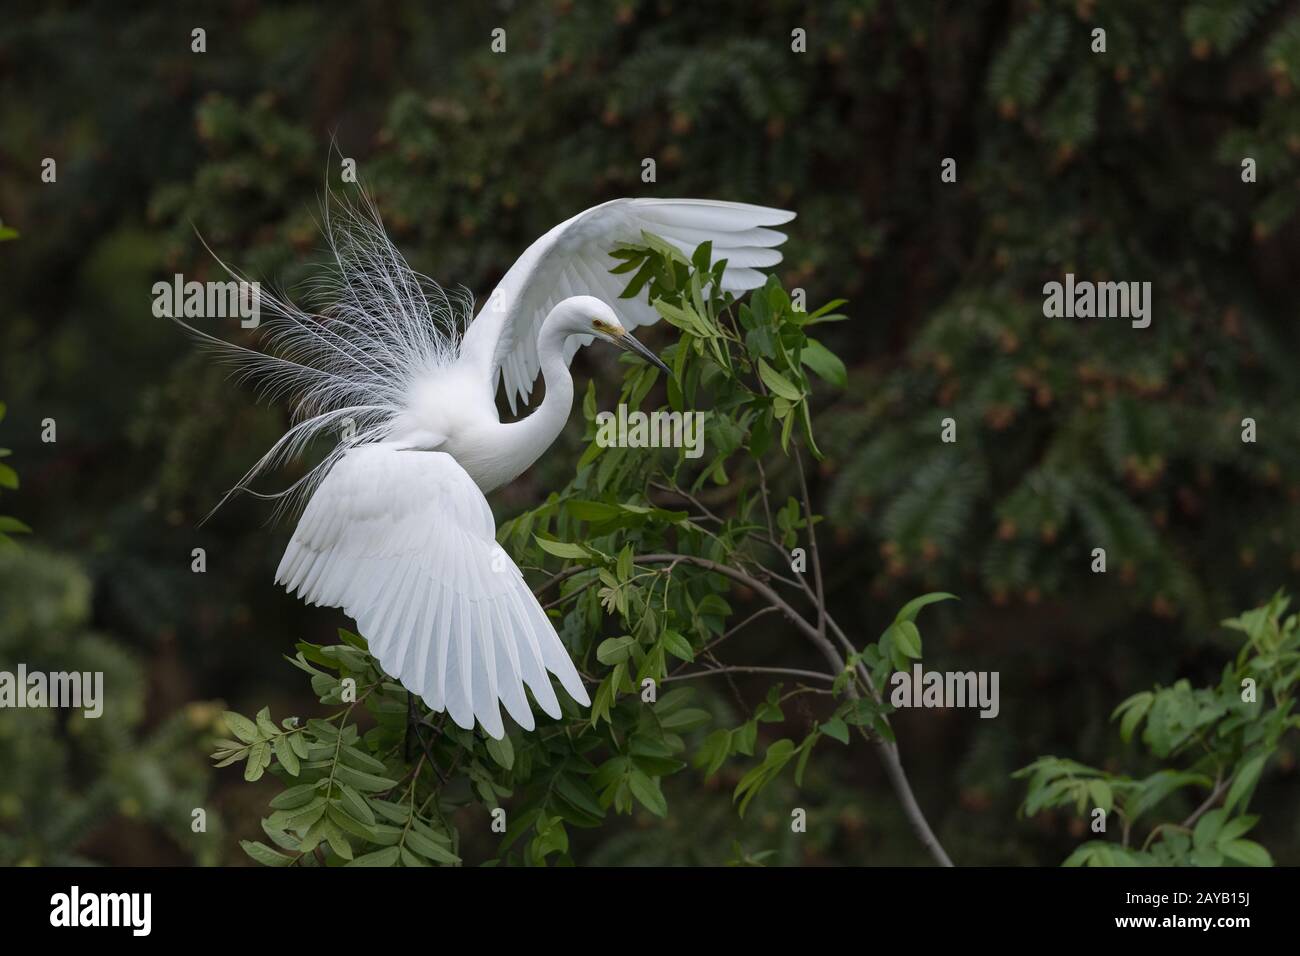 beautiful great white heron Stock Photo